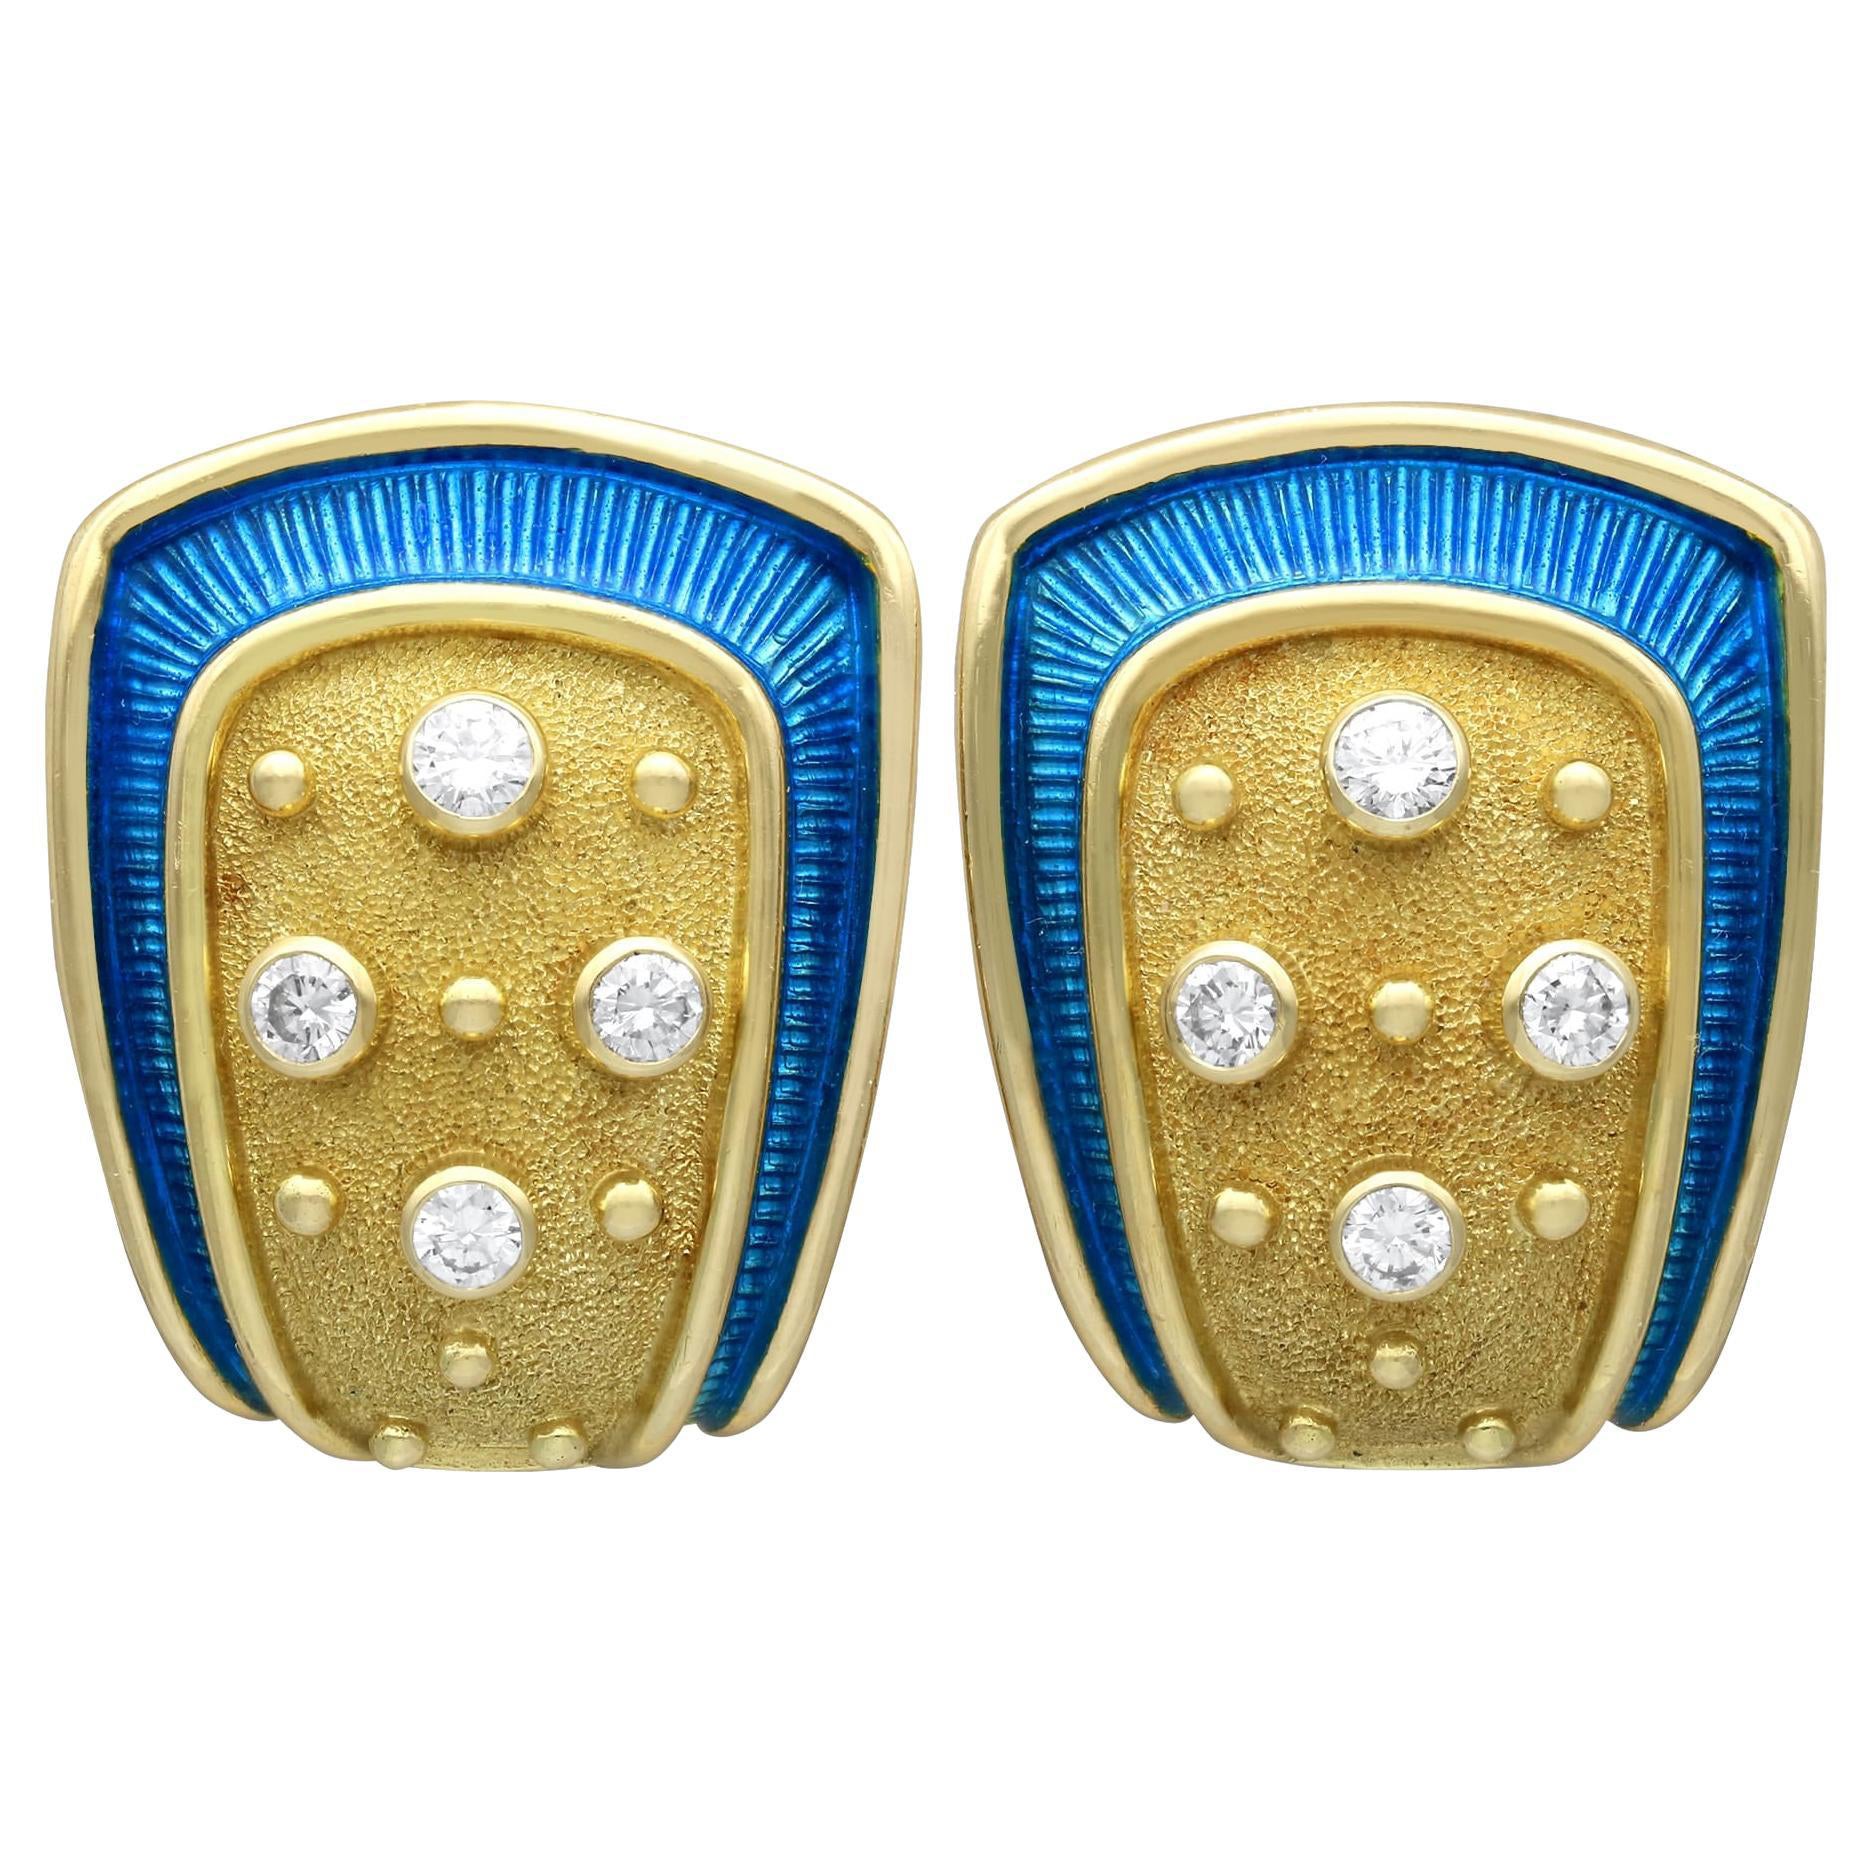 1990s Enamel 0.88 Carat Diamond and 18k Yellow Gold Earrings by De Vroomen For Sale